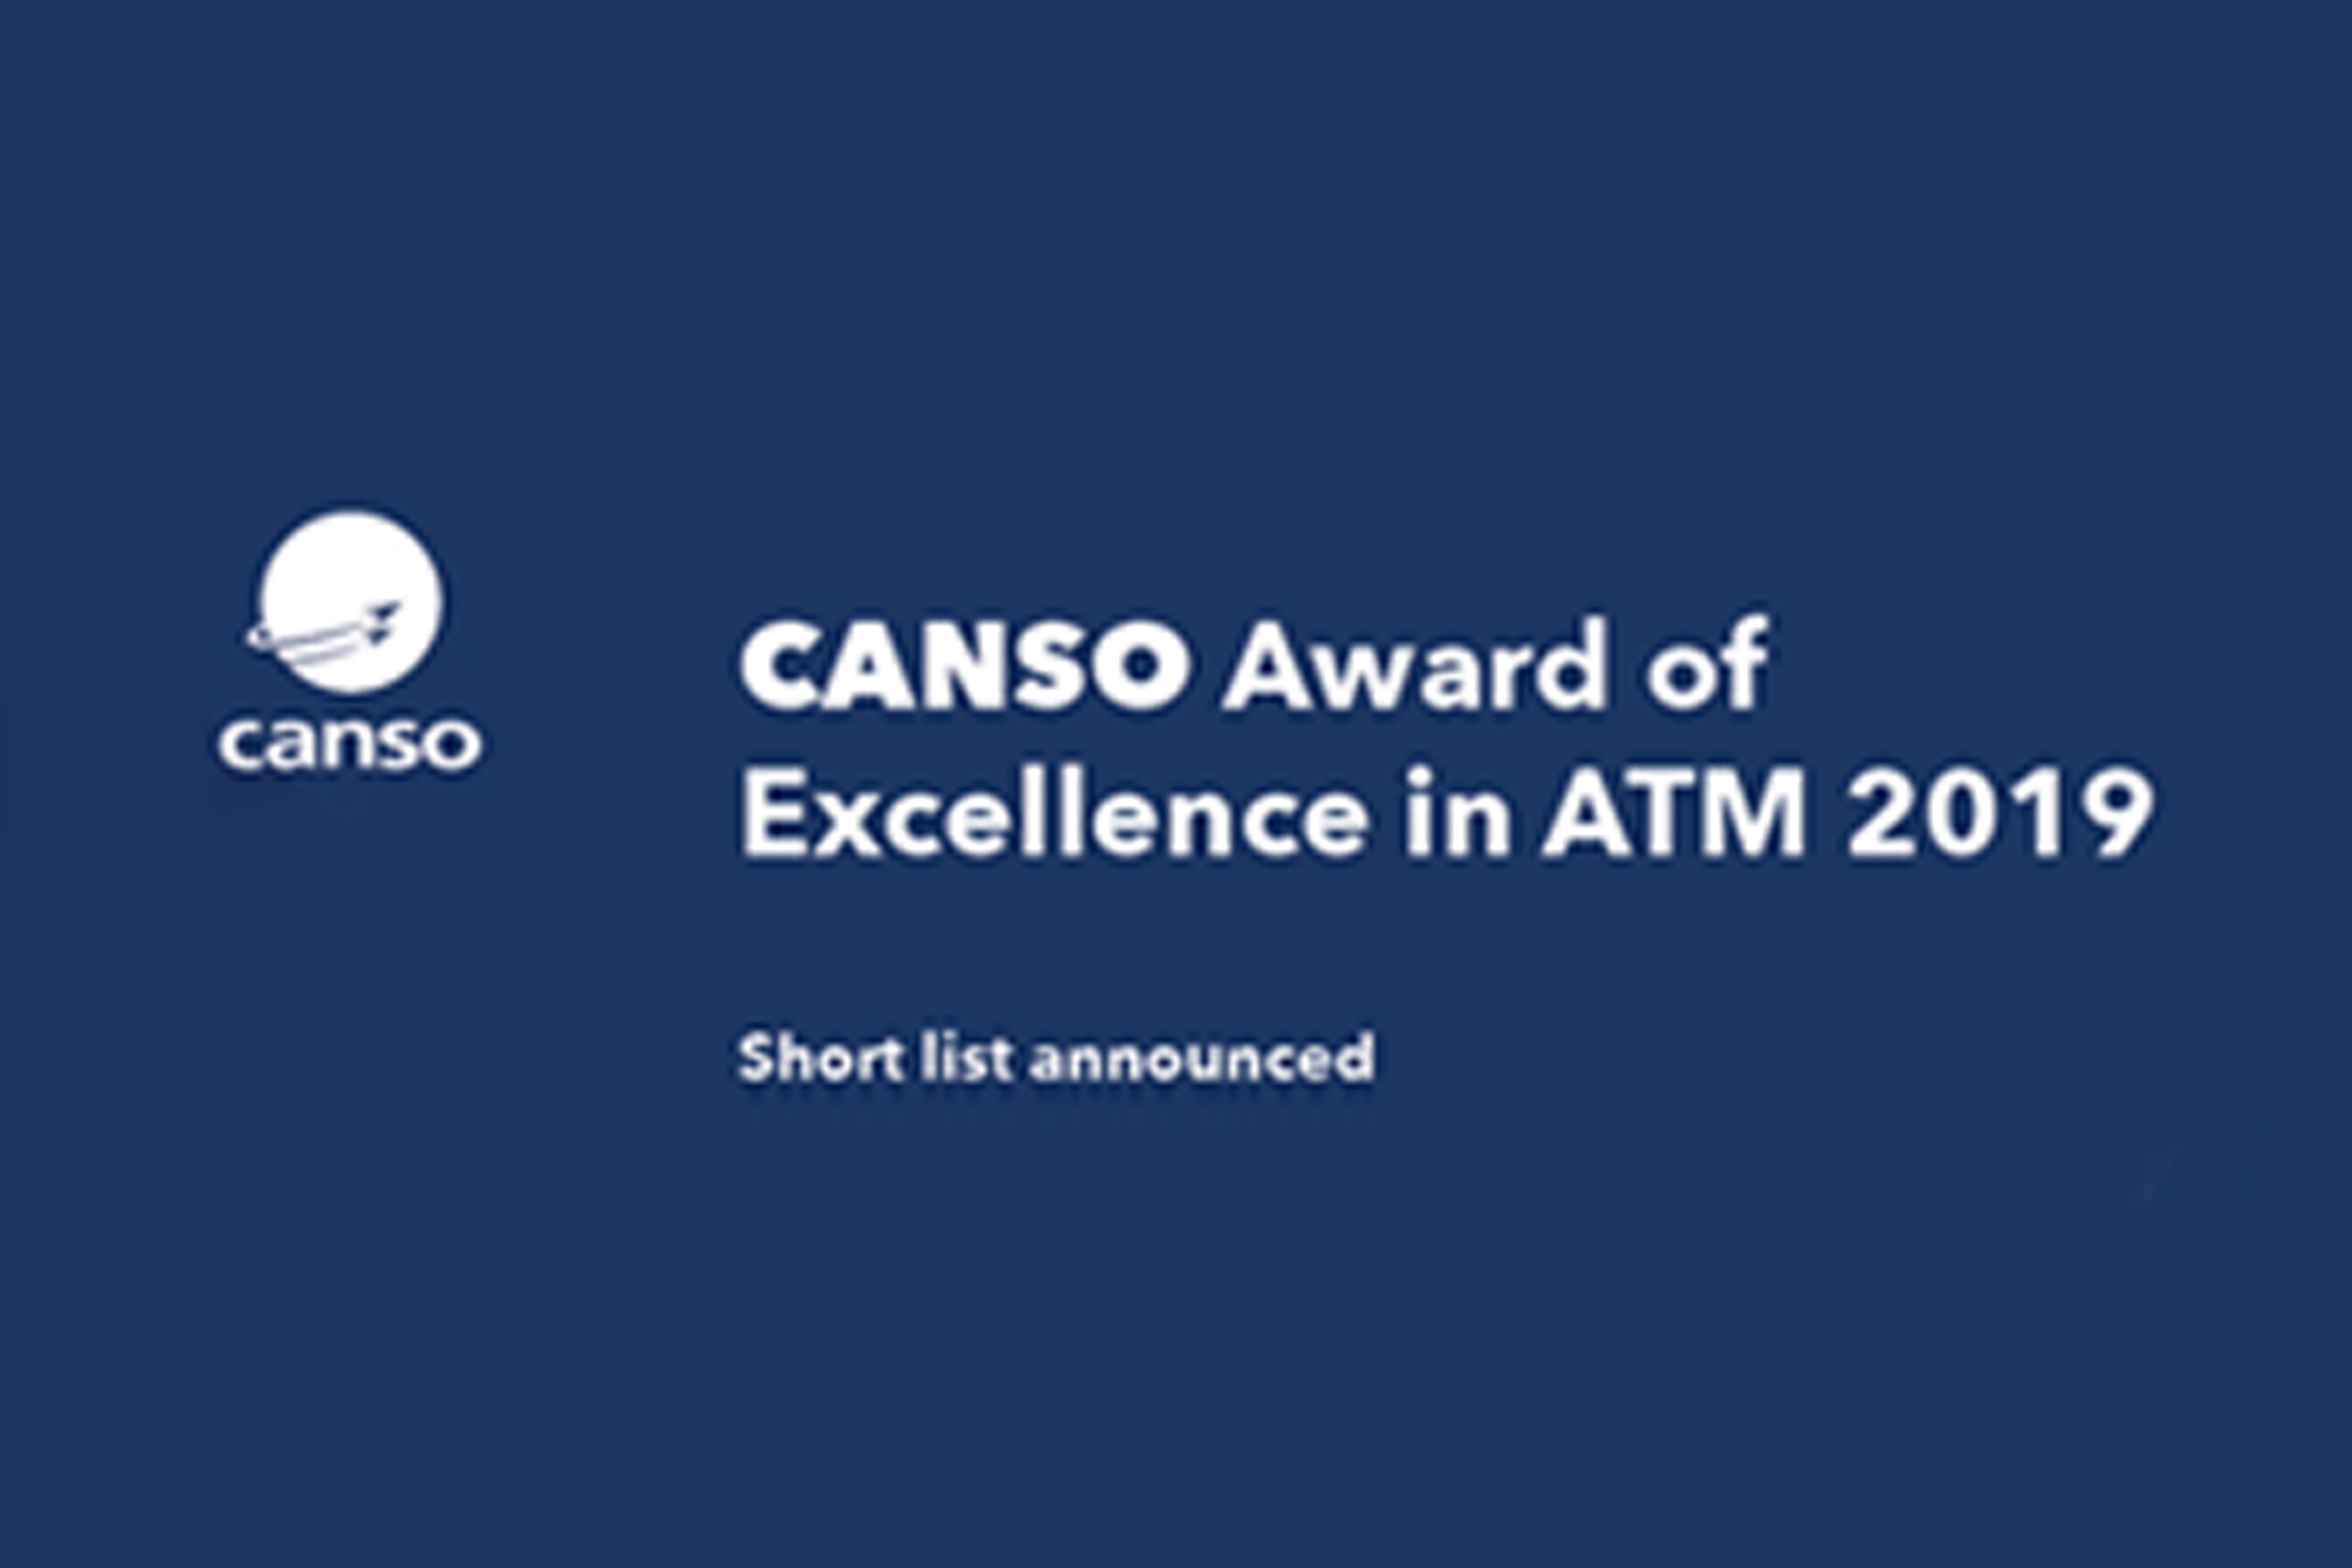 CANSO công bố danh sách ngắn cho Giải thưởng Chất lượng vượt trội  trong lĩnh vực ATM 2019